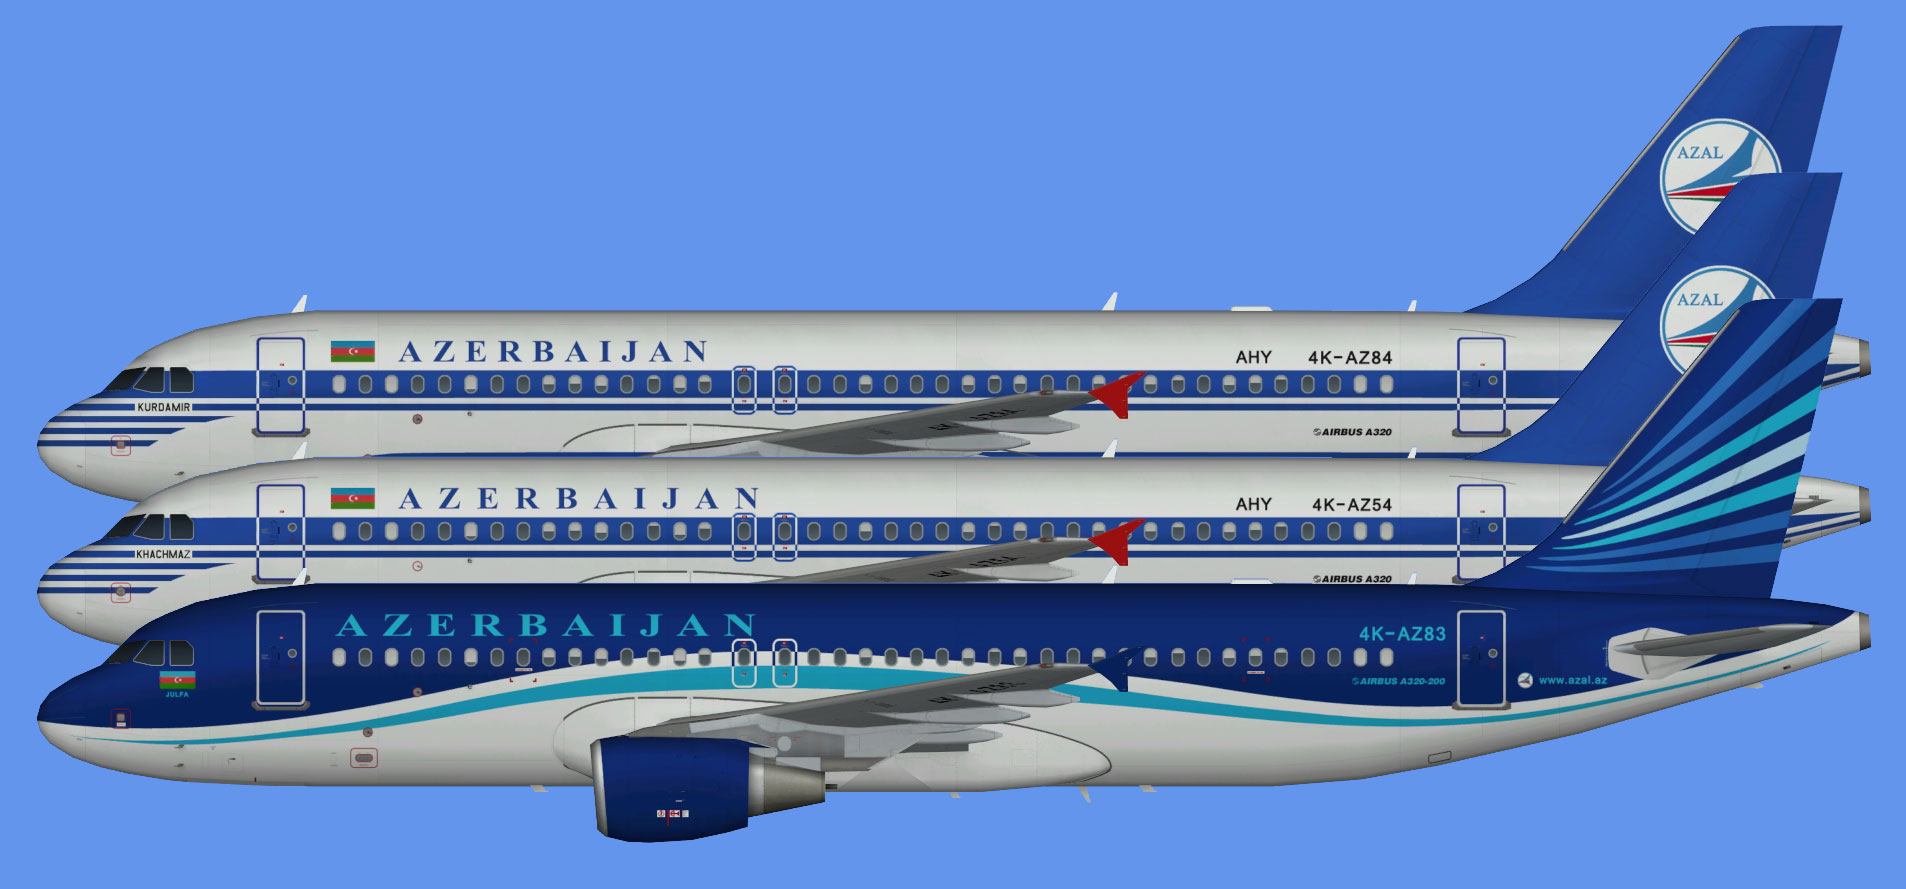 Azerbaijan Airlines A320